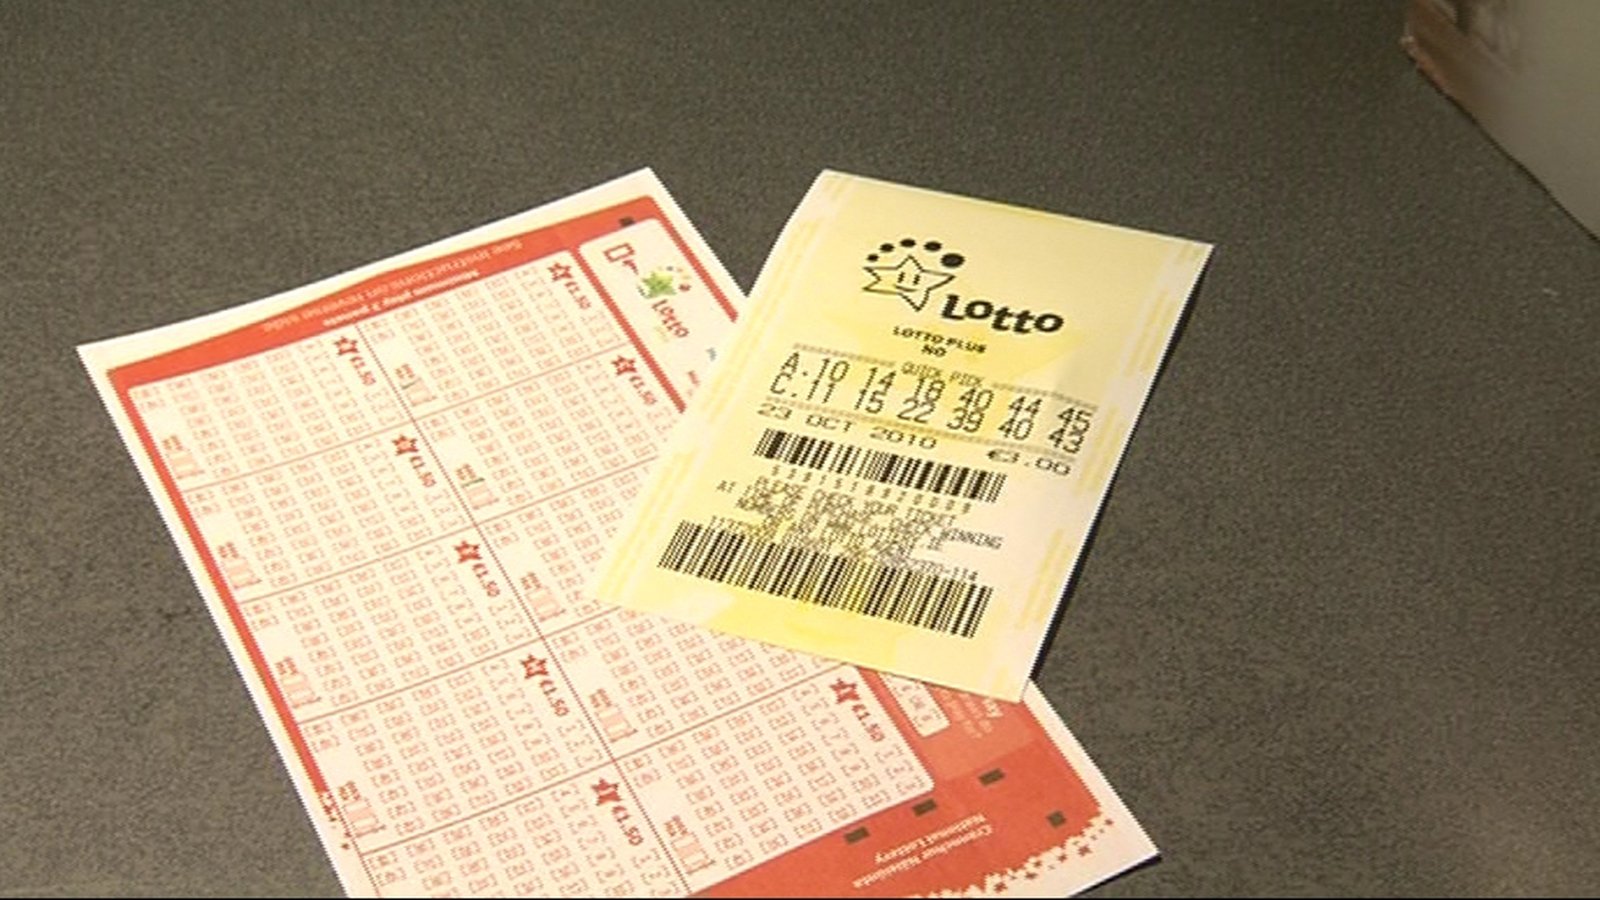 irish lotto cost per line